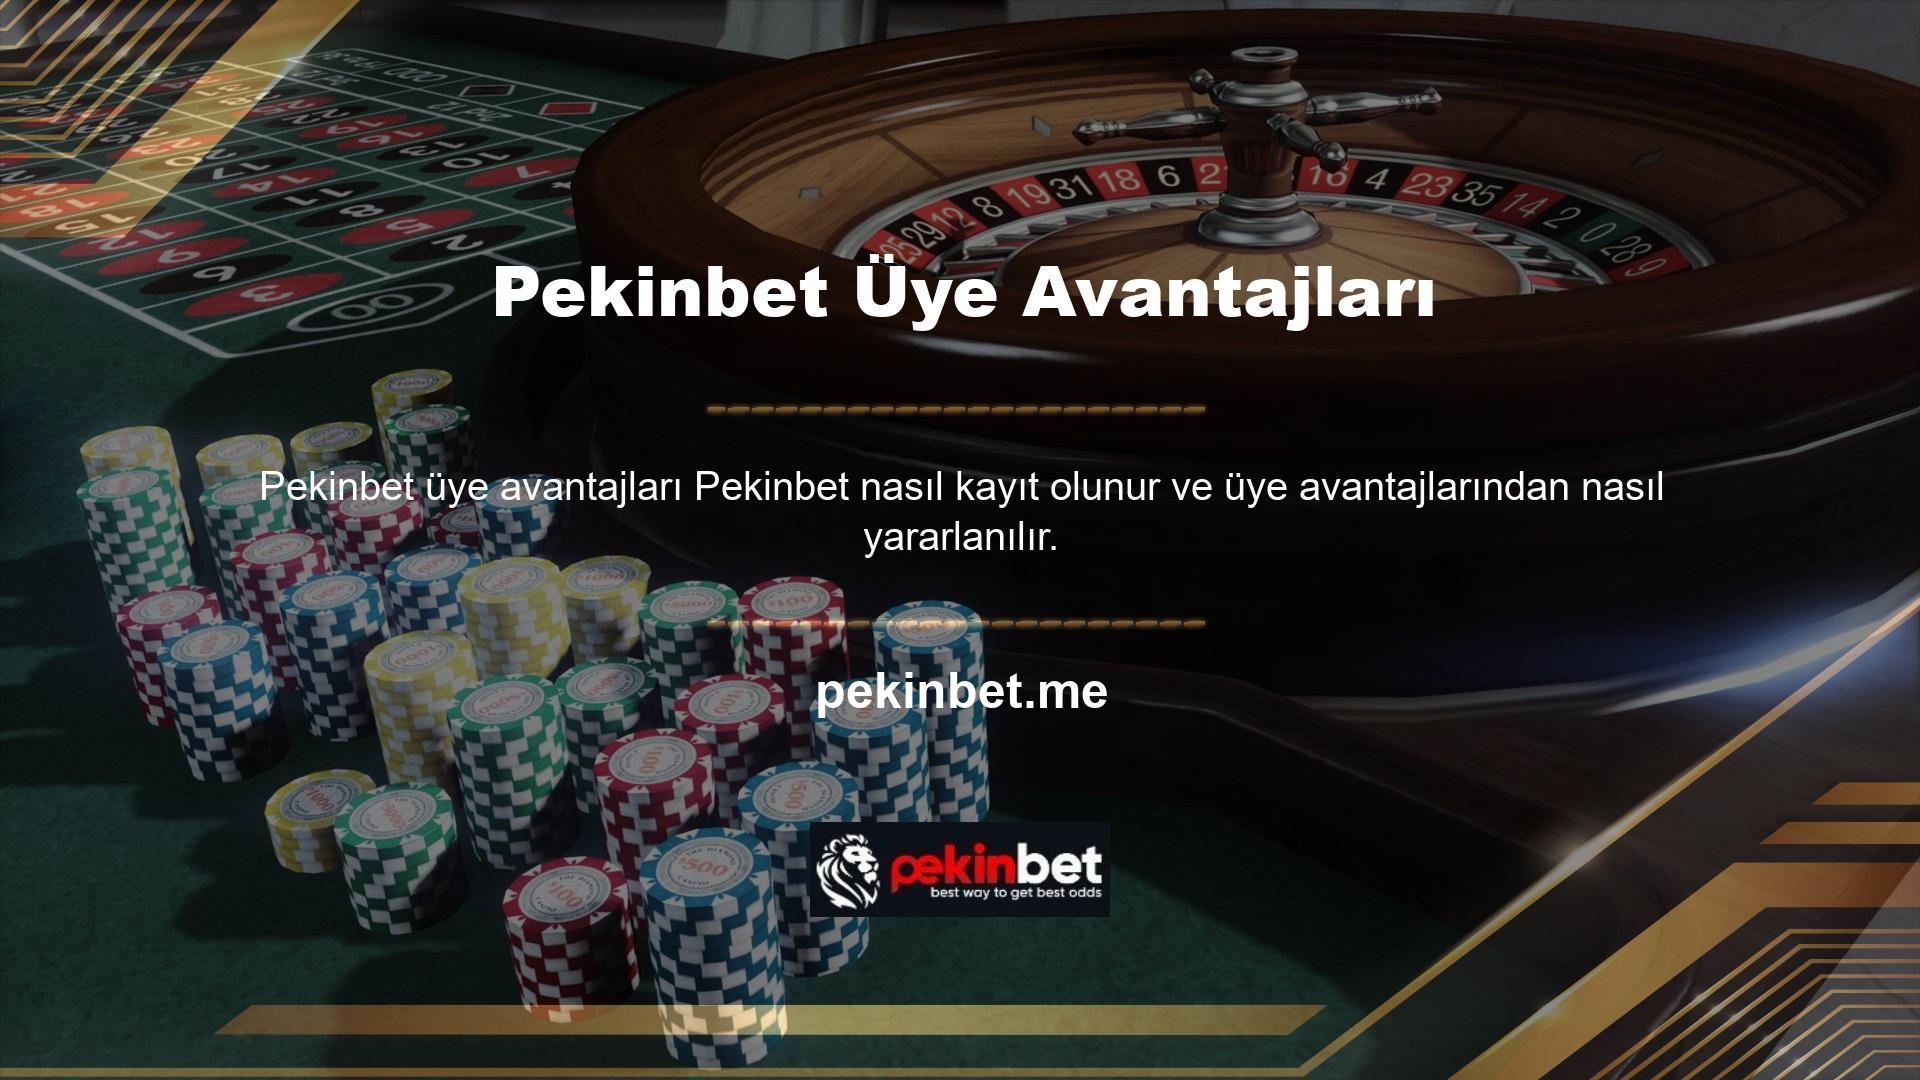 Çevrimiçi casinolar ve bahis siteleri, yeni oyuncuları çekmek ve normal oyuncuları siteyi kötüye kullanmaktan caydırmak için ayrıntılı bonus kampanyaları planlar